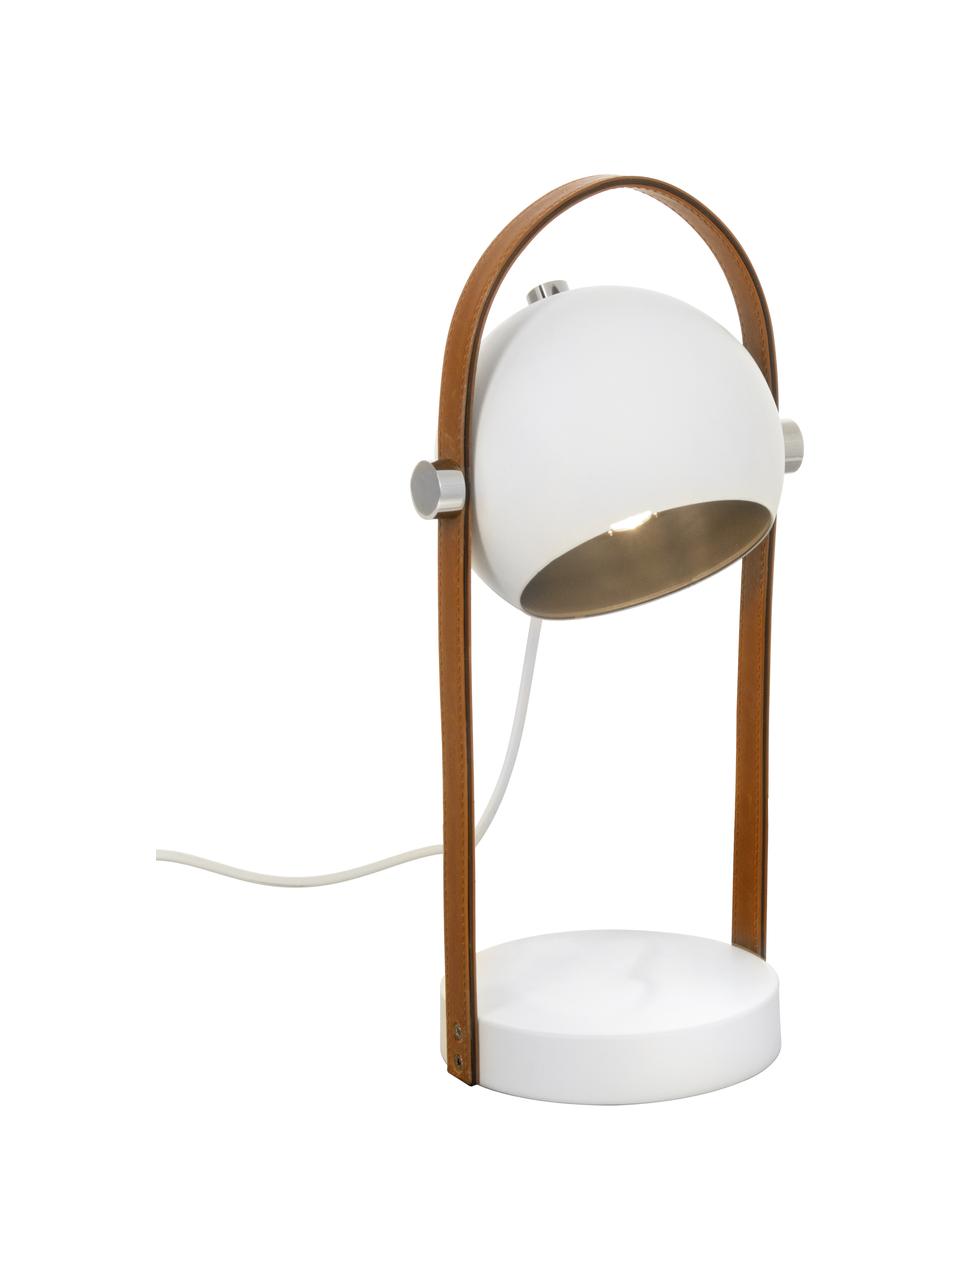 Tafellamp Bow met leren decoratie, Lampenkap: gecoat metaal, Lampvoet: gecoat metaal, Bruin, wit, B 15 x H 38 cm